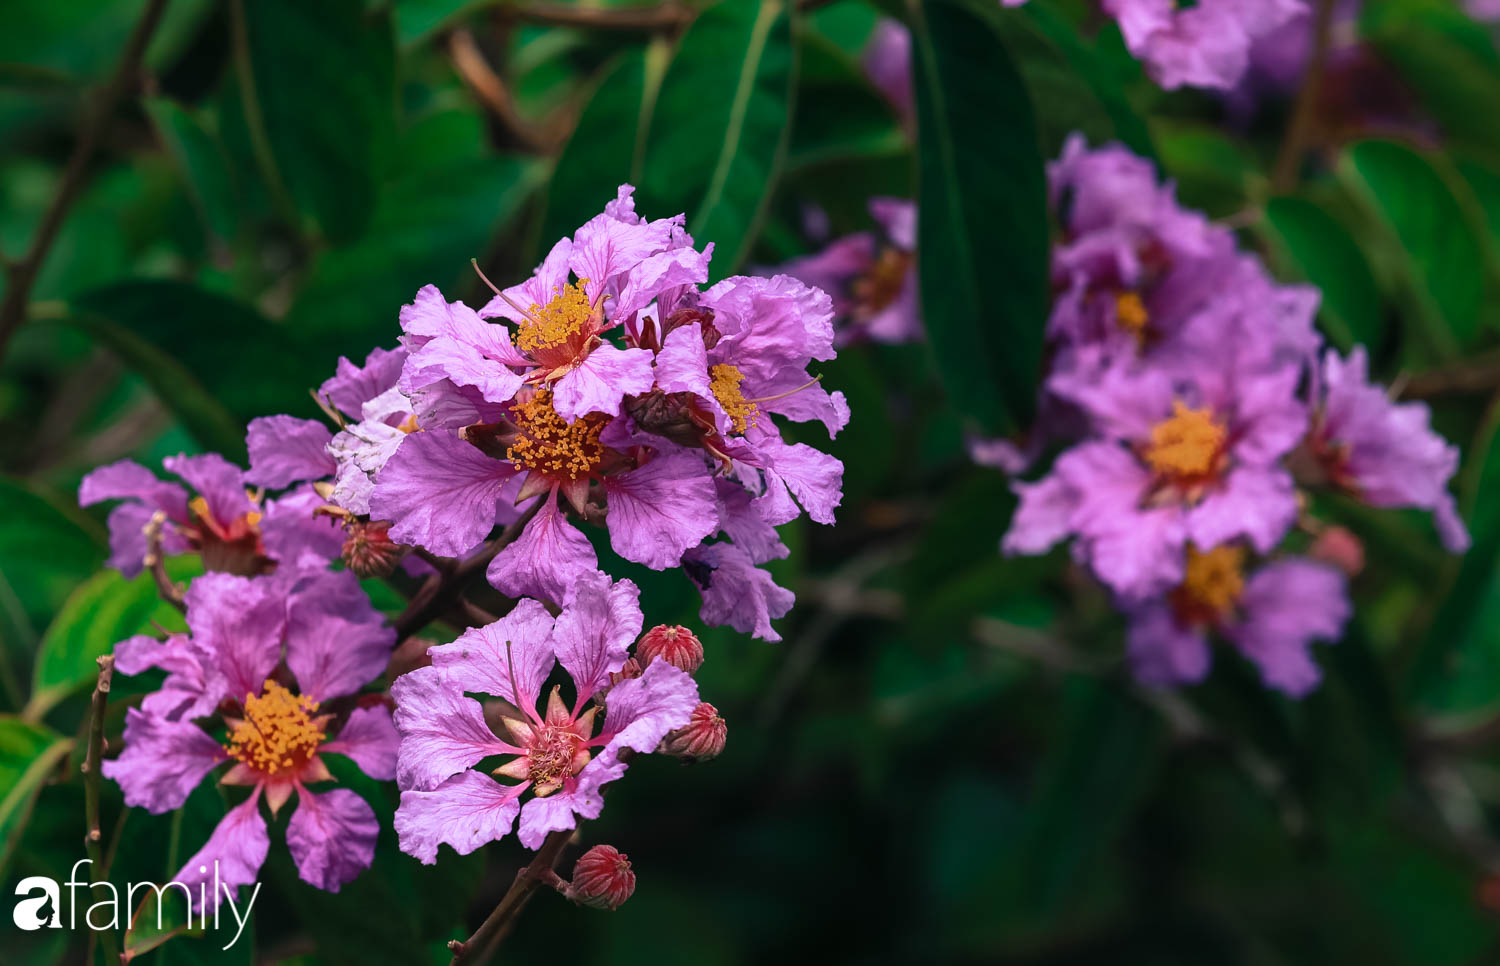 Trở lại cuộc sống bộn bề như trước, có mấy ai nhận ra Hà Nội đang trong một mùa hoa bằng lăng đẹp tuyệt vời - Ảnh 3.